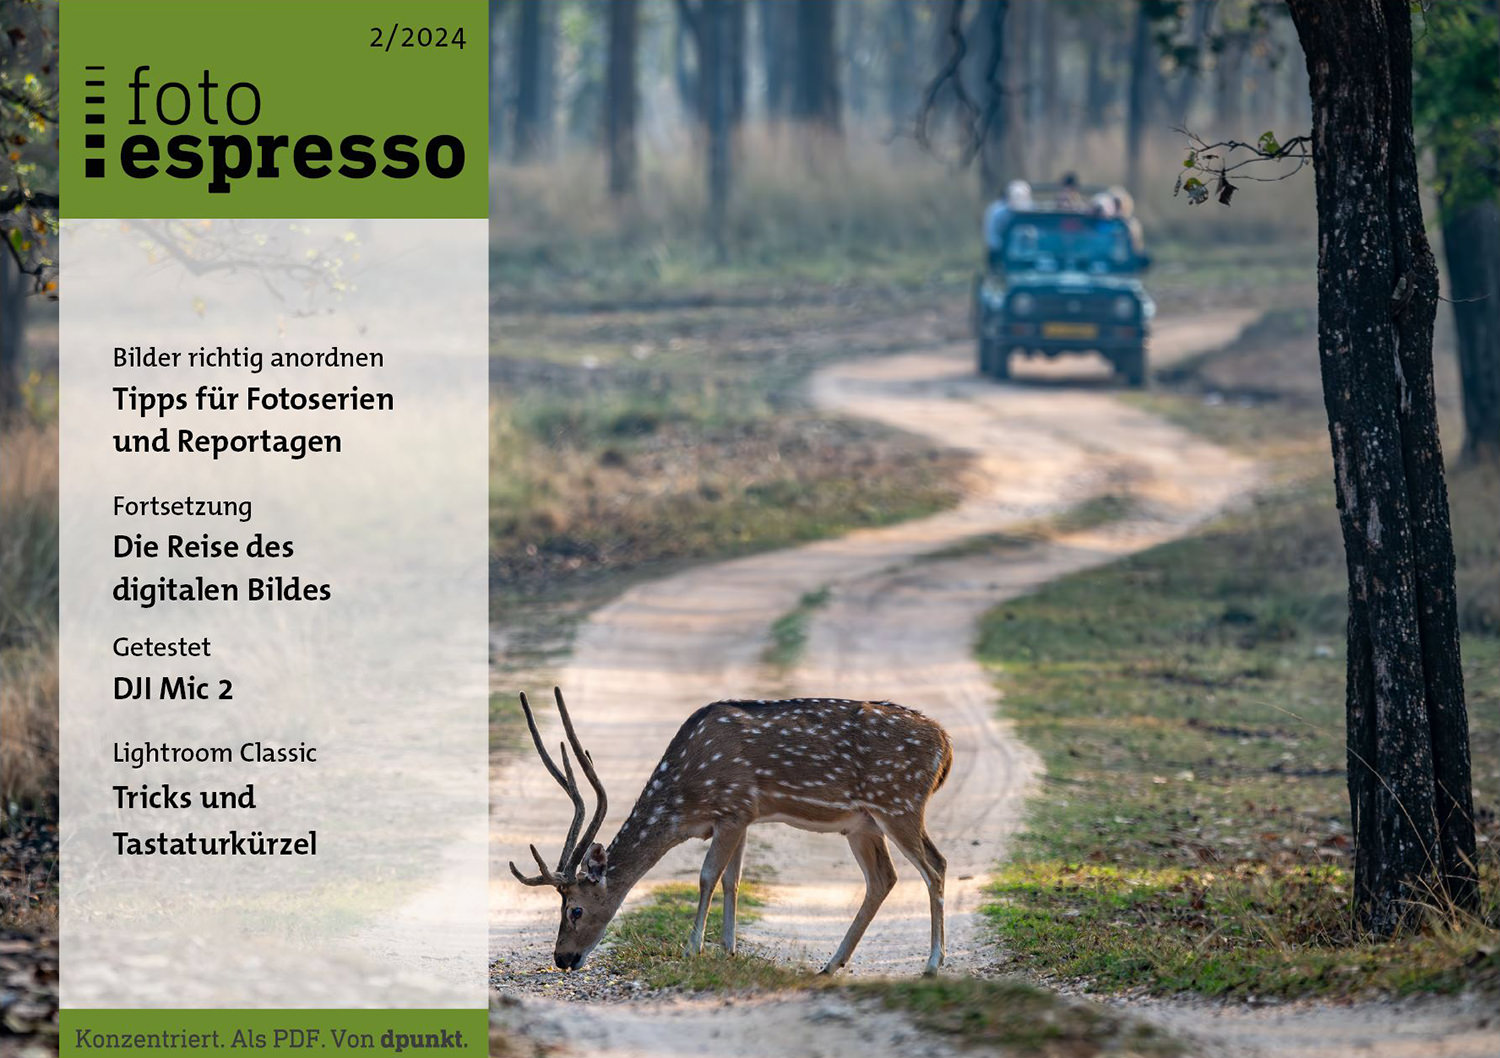 fotoespresso 24-02 - Fotoserien & Reportagen - Cover